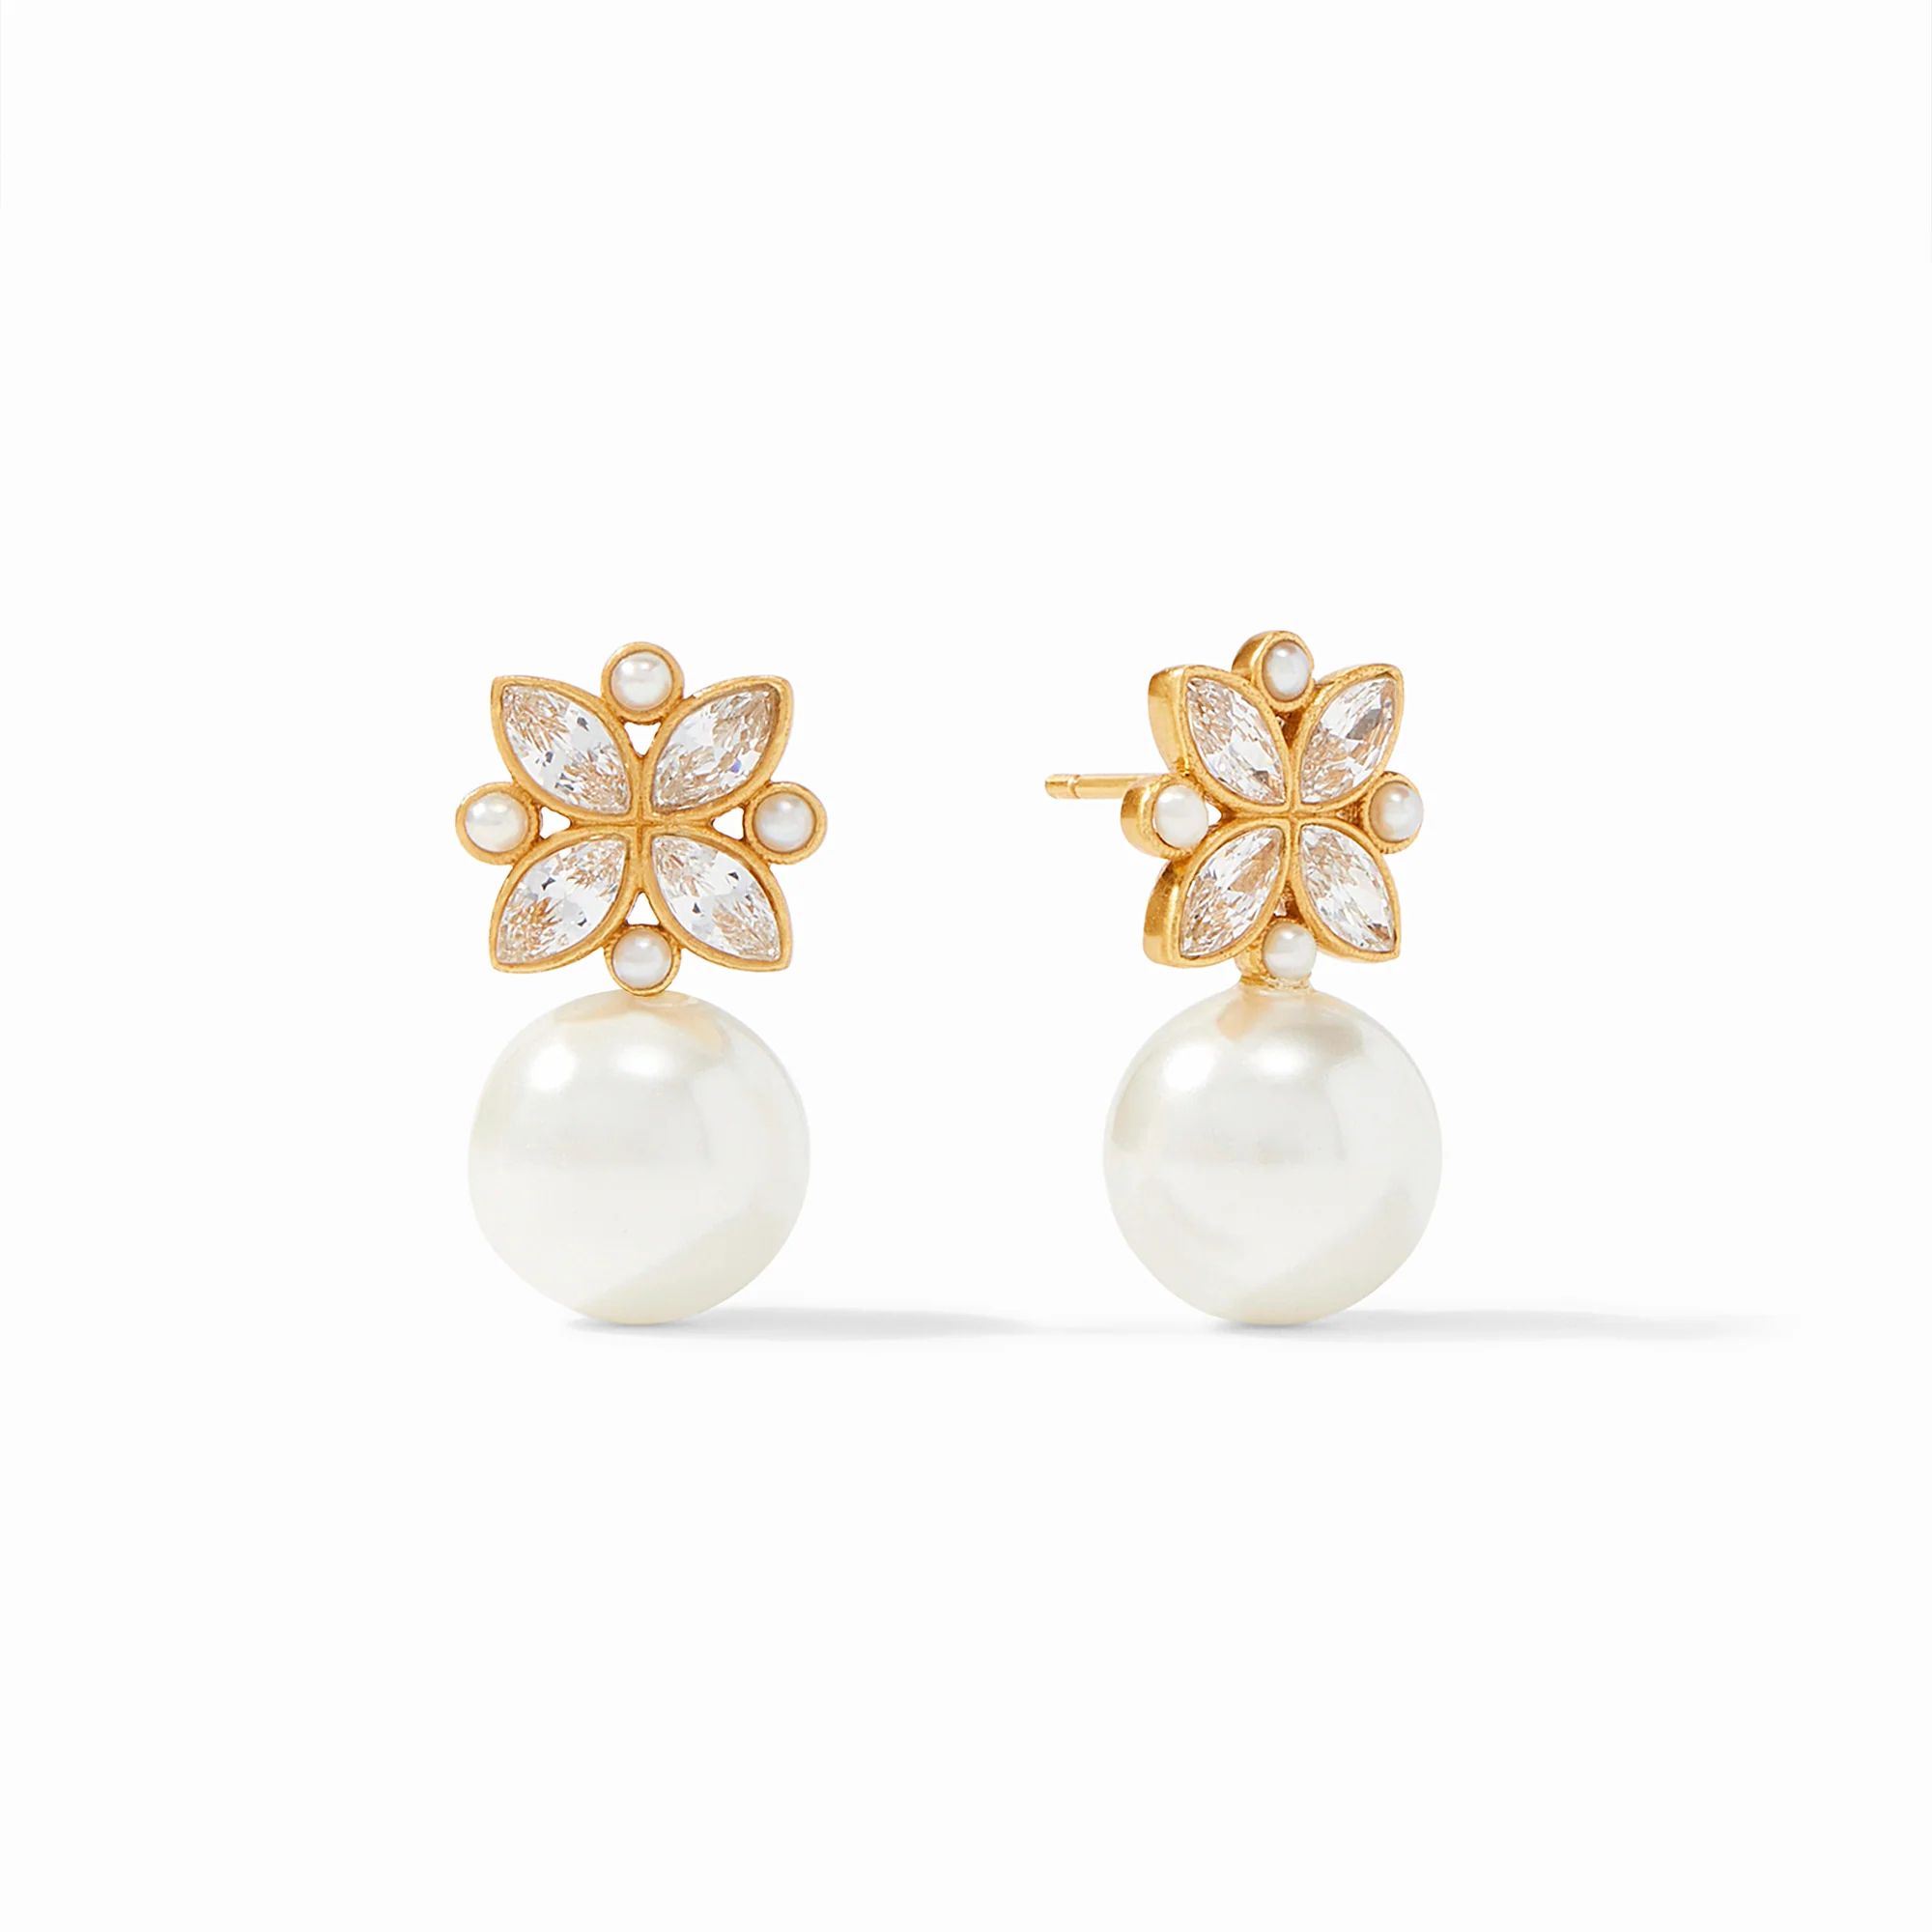 Charlotte Gold & Pearl Drop Earrings | Julie Vos | Julie Vos